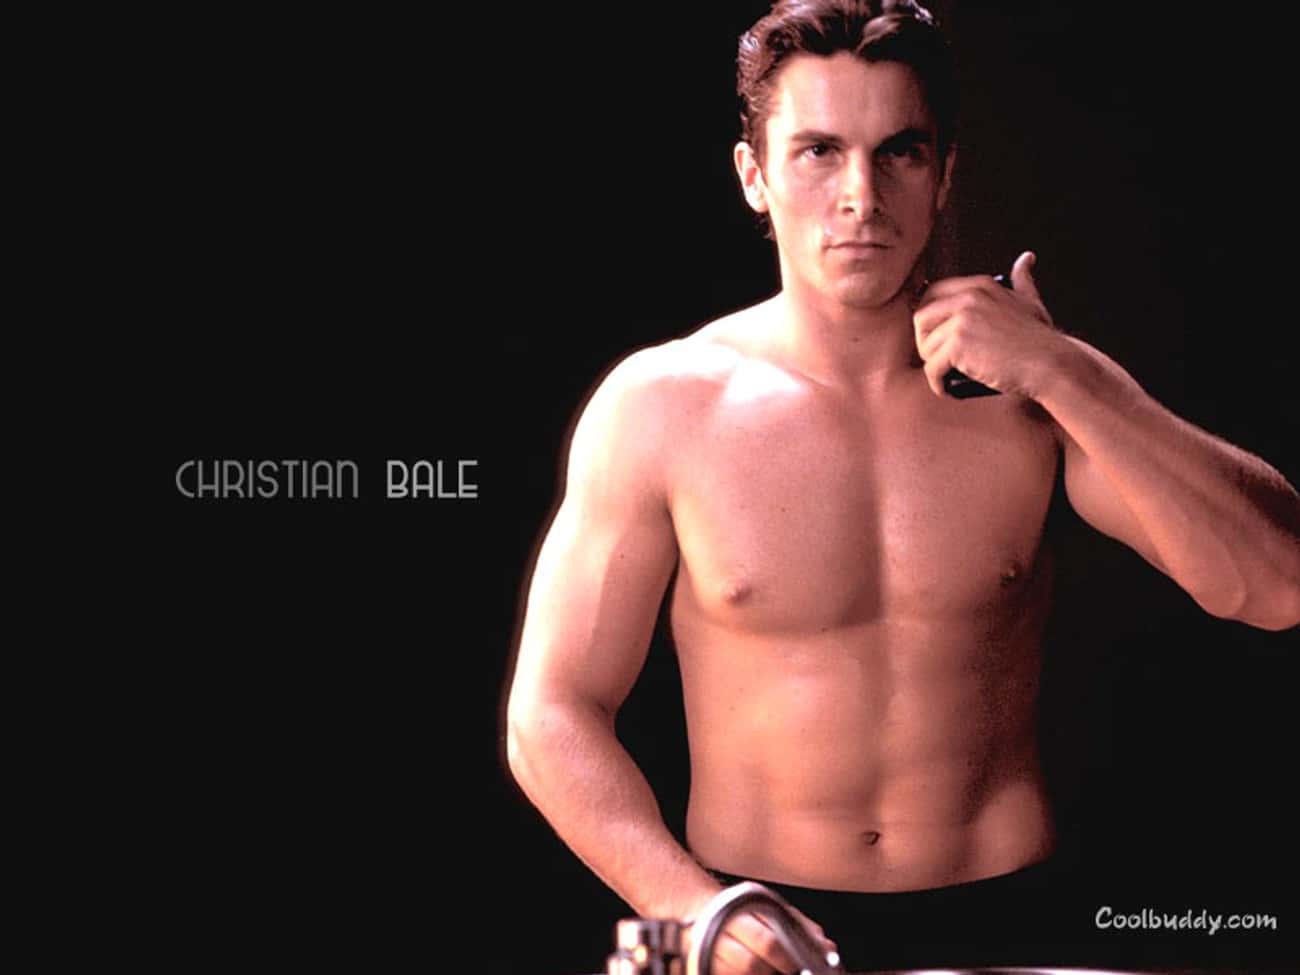 Christian Bale in Shirtless Pose